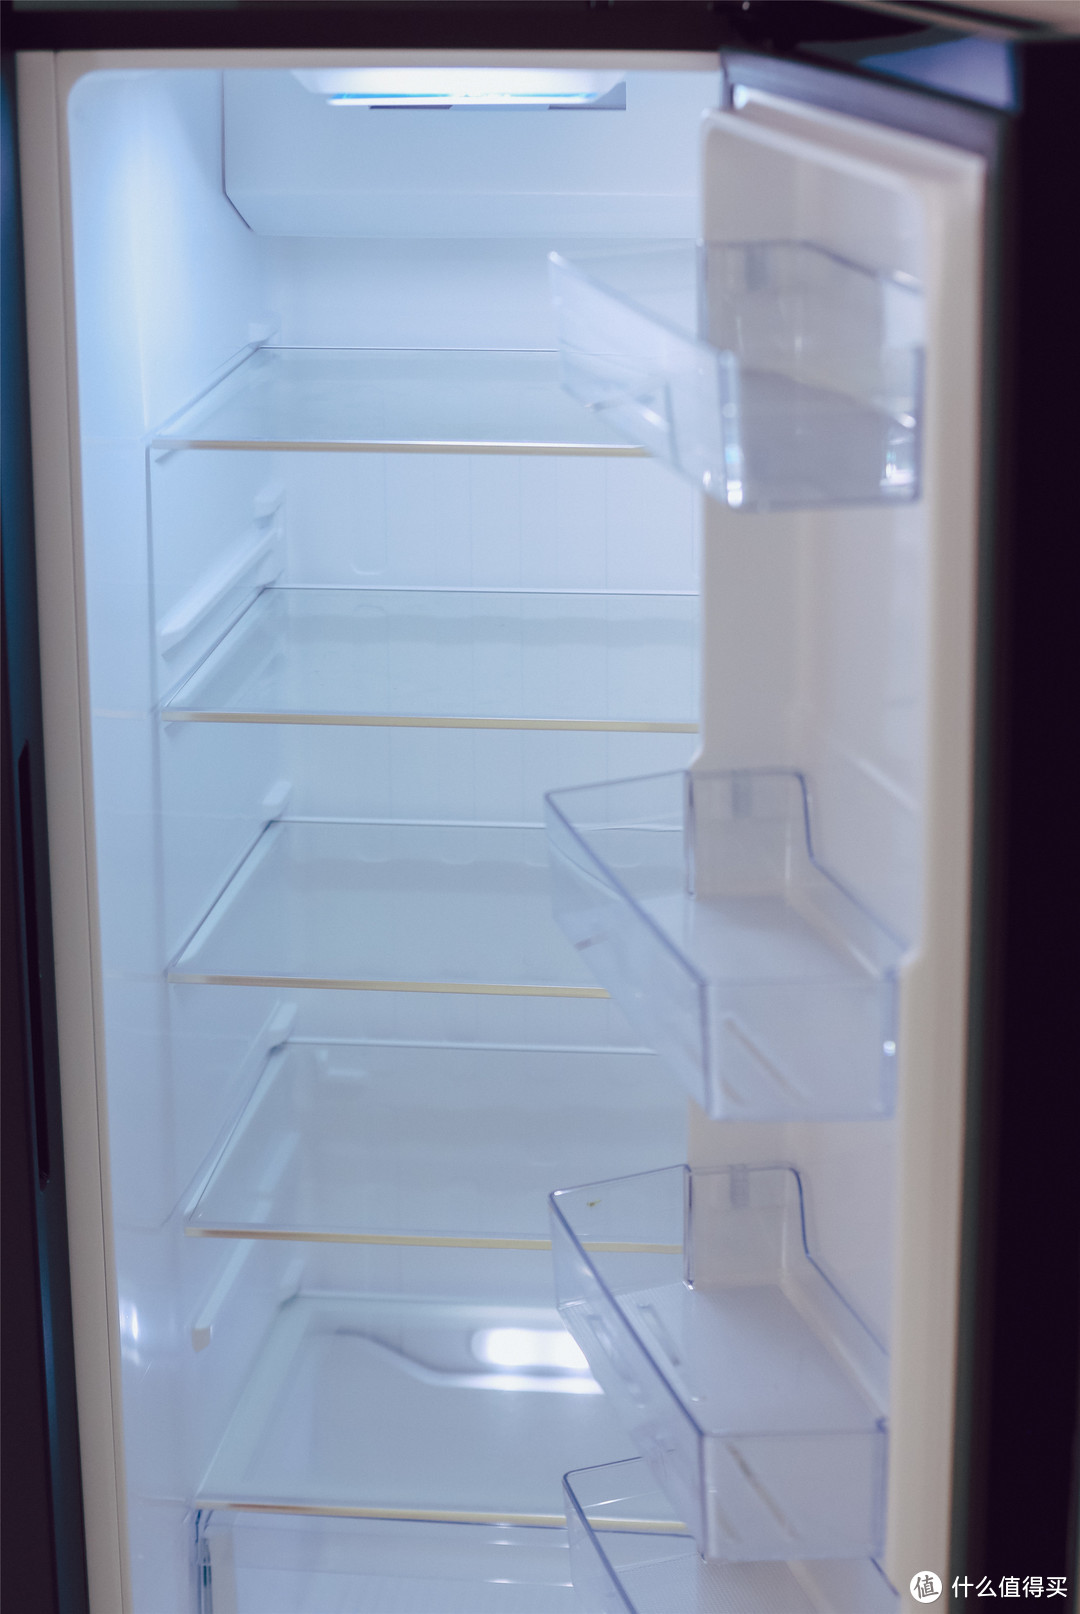 好用不贵1级能耗的均衡之作——美的19分钟急速净味冰箱639L冰箱体验